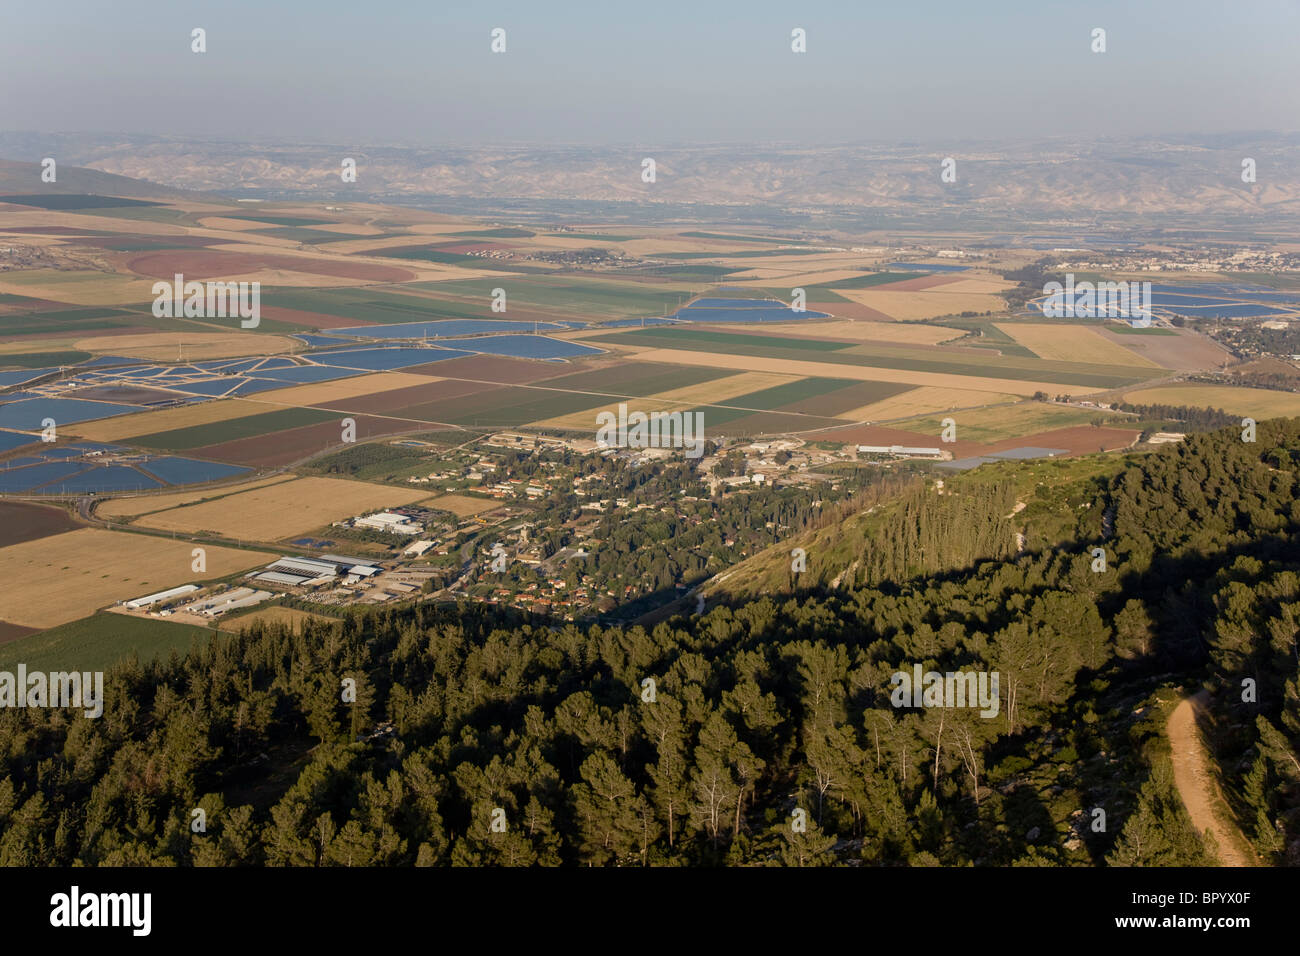 Fotografia aerea dell'agricoltura campi della valle di Jezreel Foto Stock